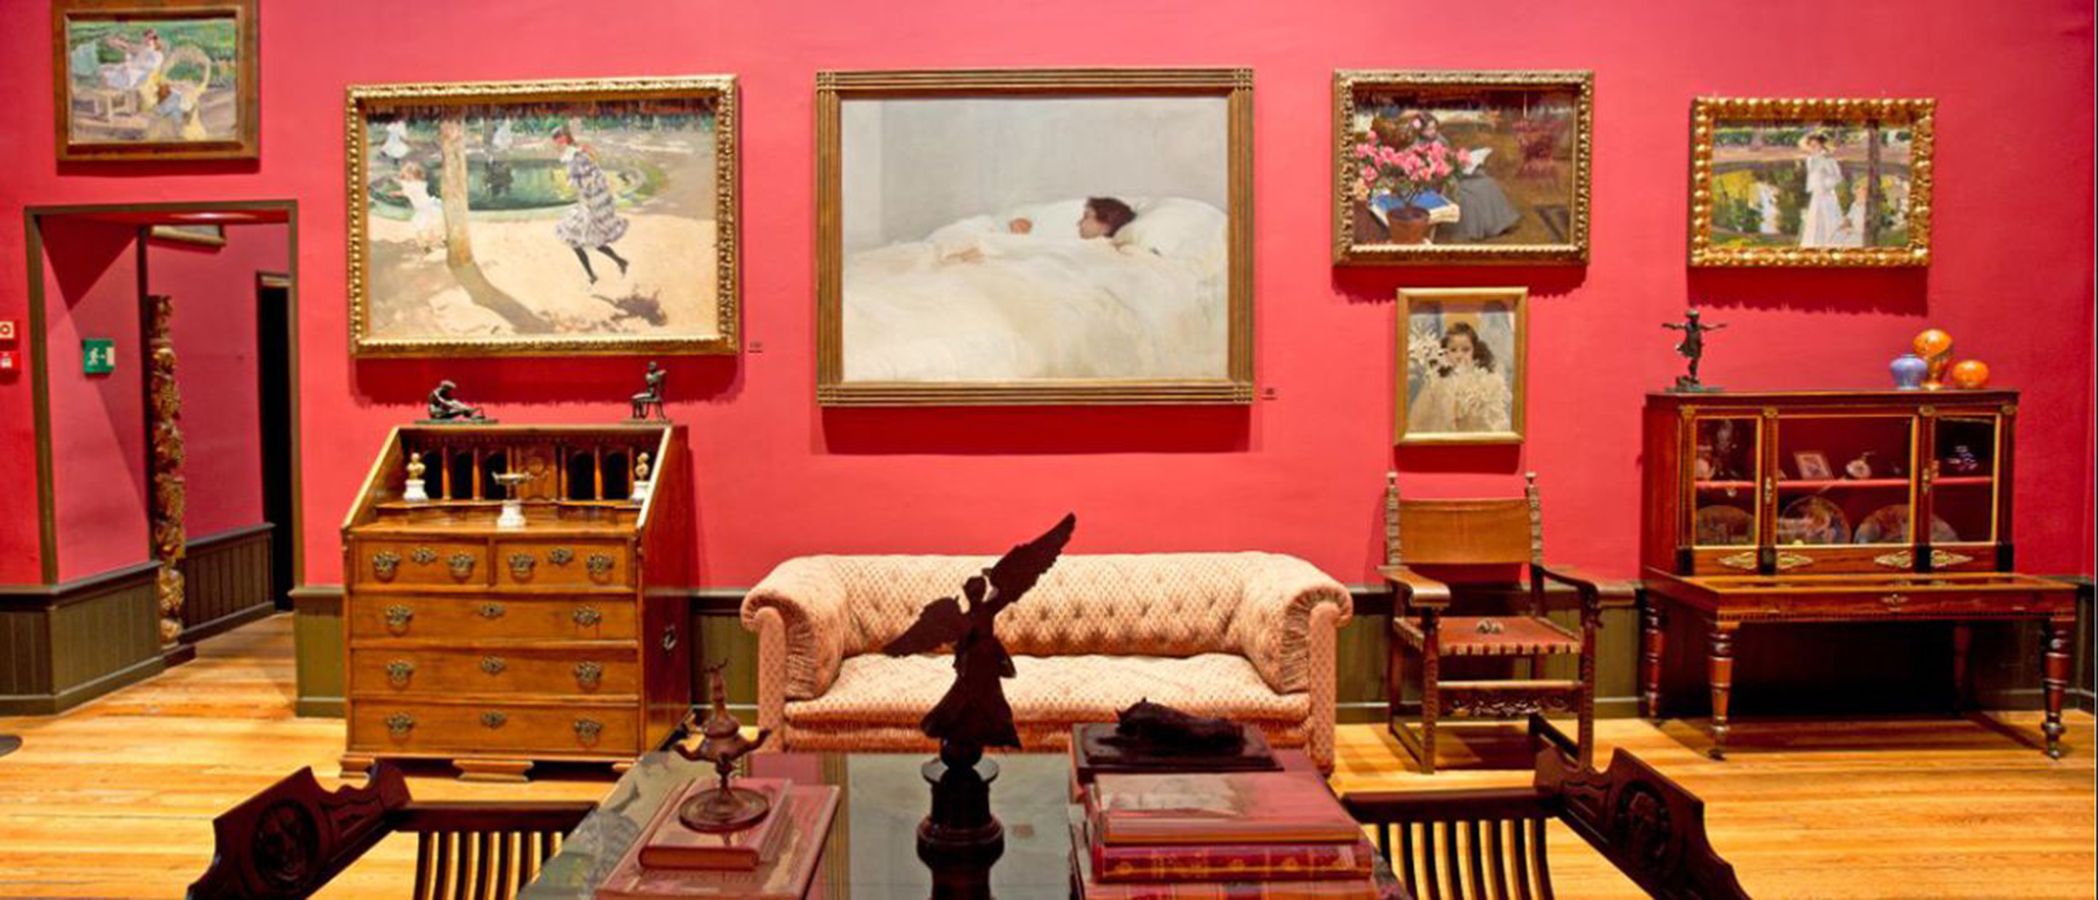 El Palacete de Joaquín Sorolla en Madrid, mucho más que un museo